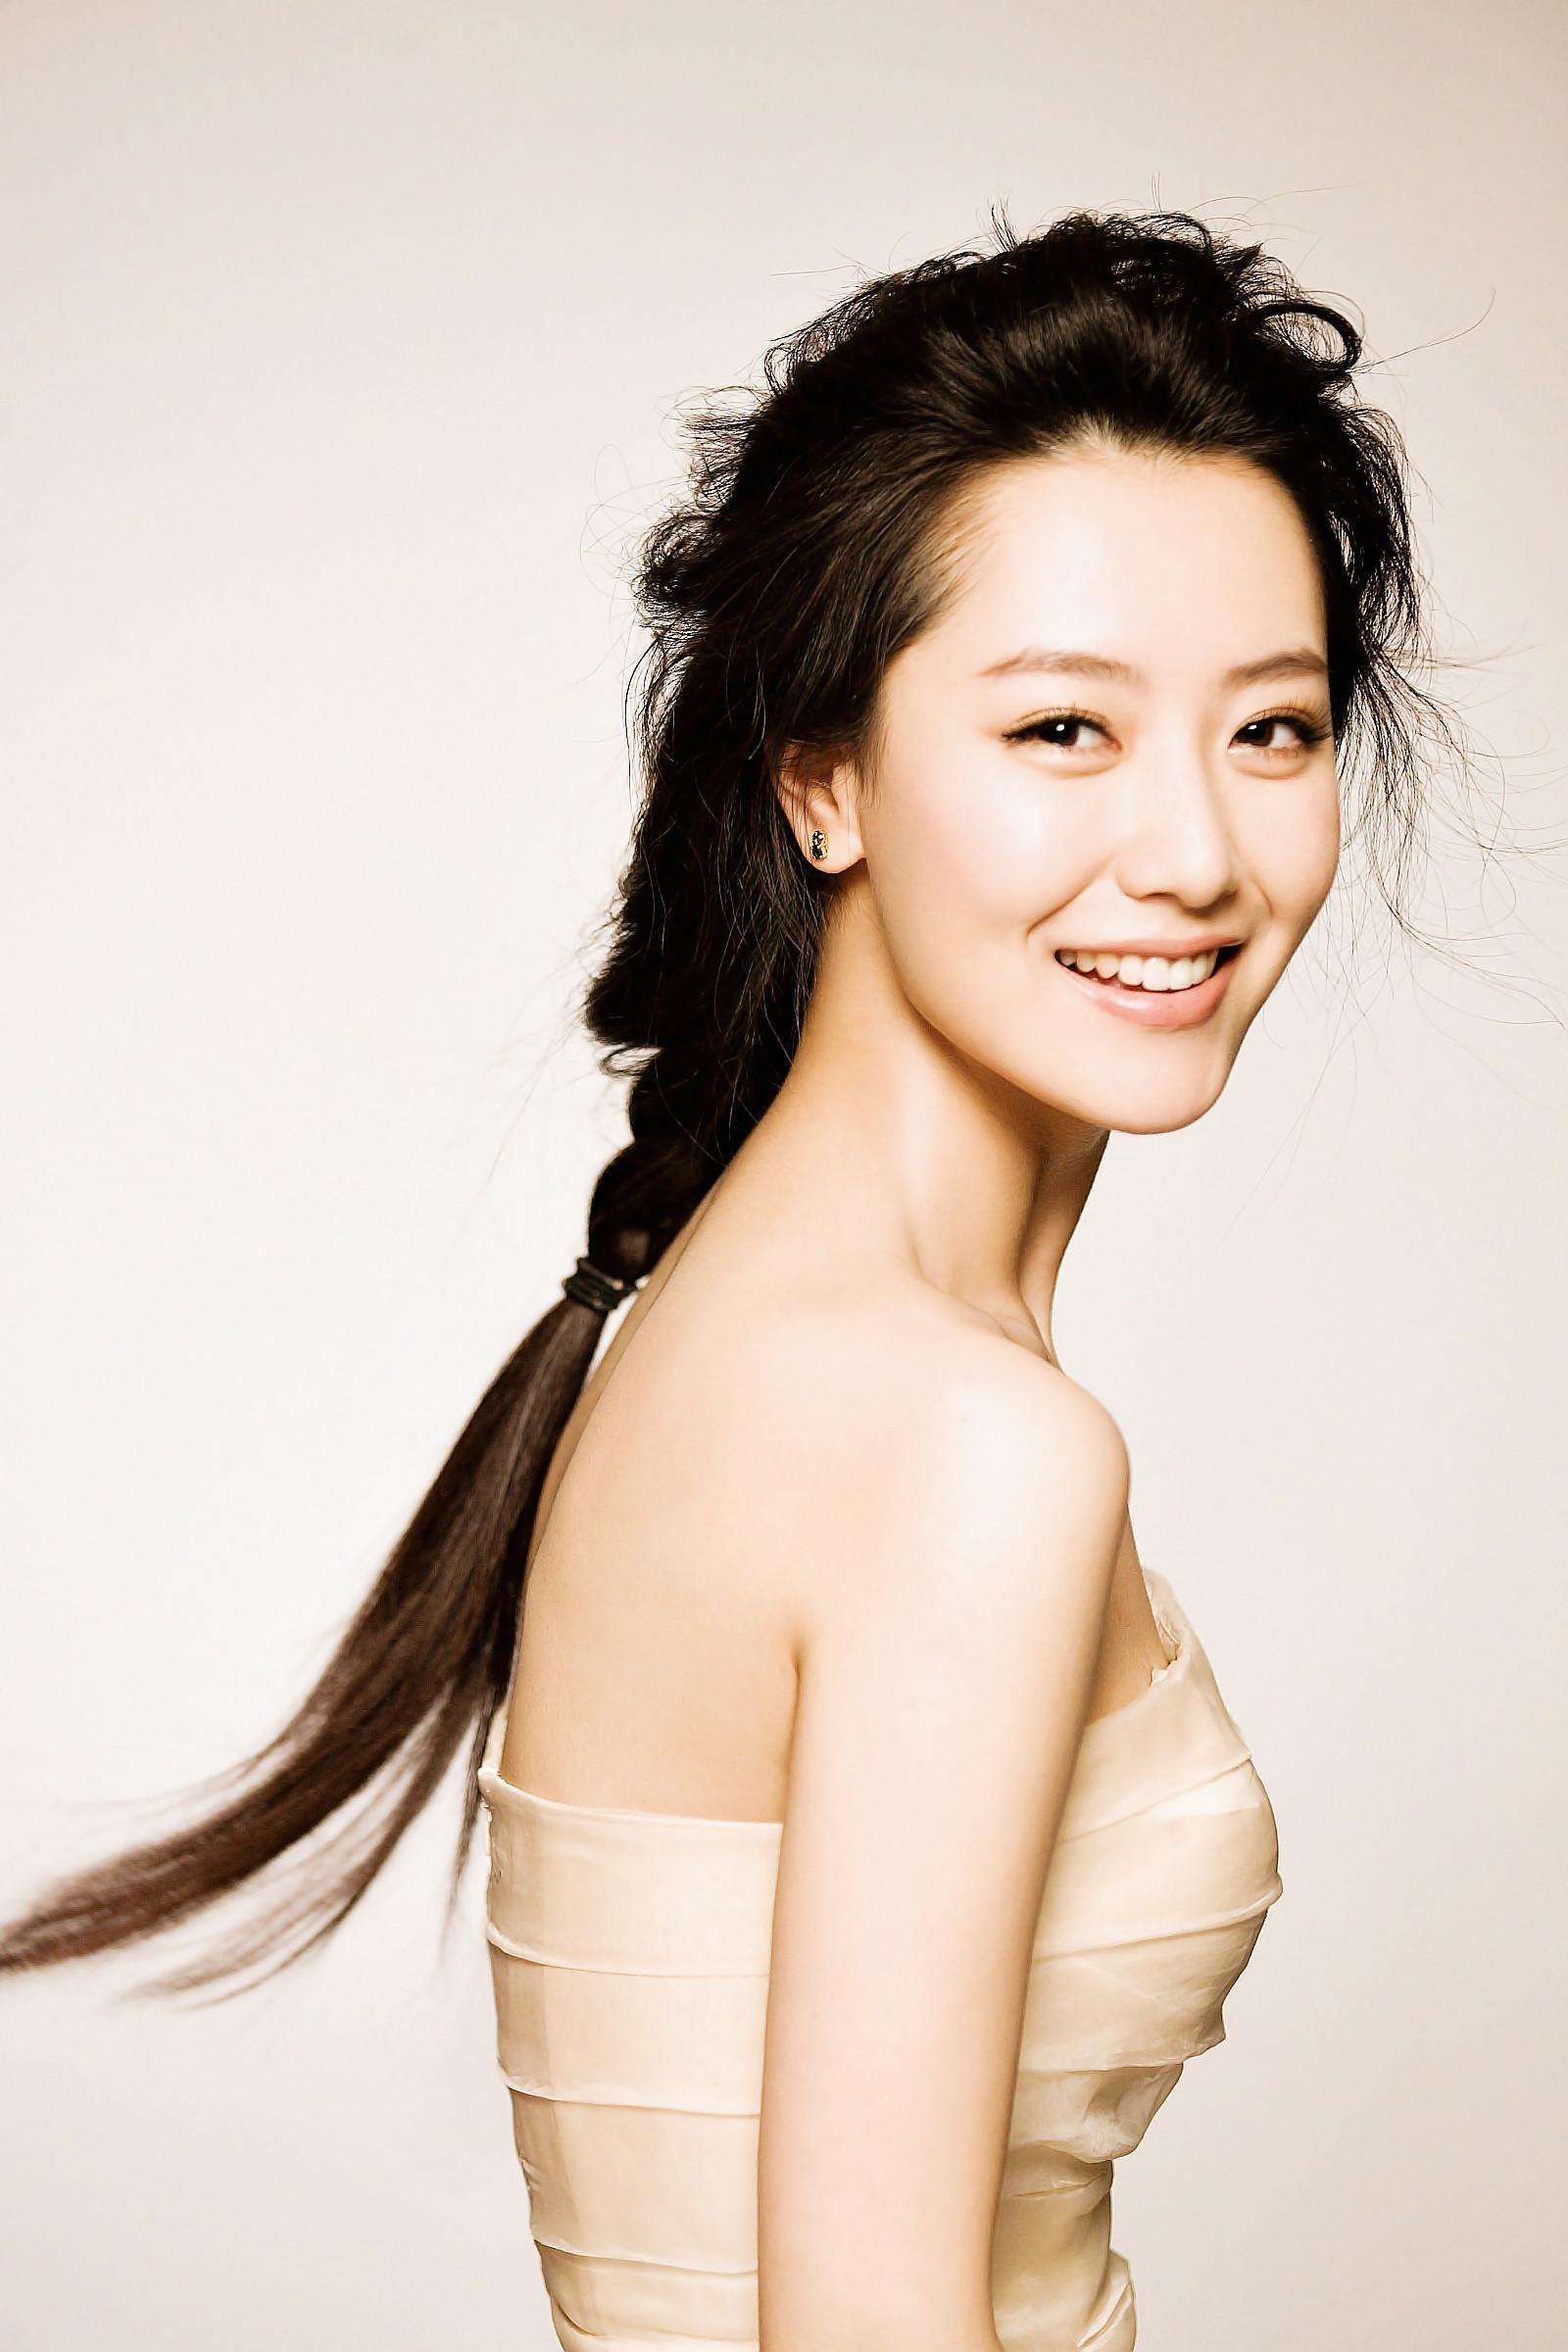 她因形象清纯酷似韩国演员金喜善而被誉为中国的小金喜善，确实棒